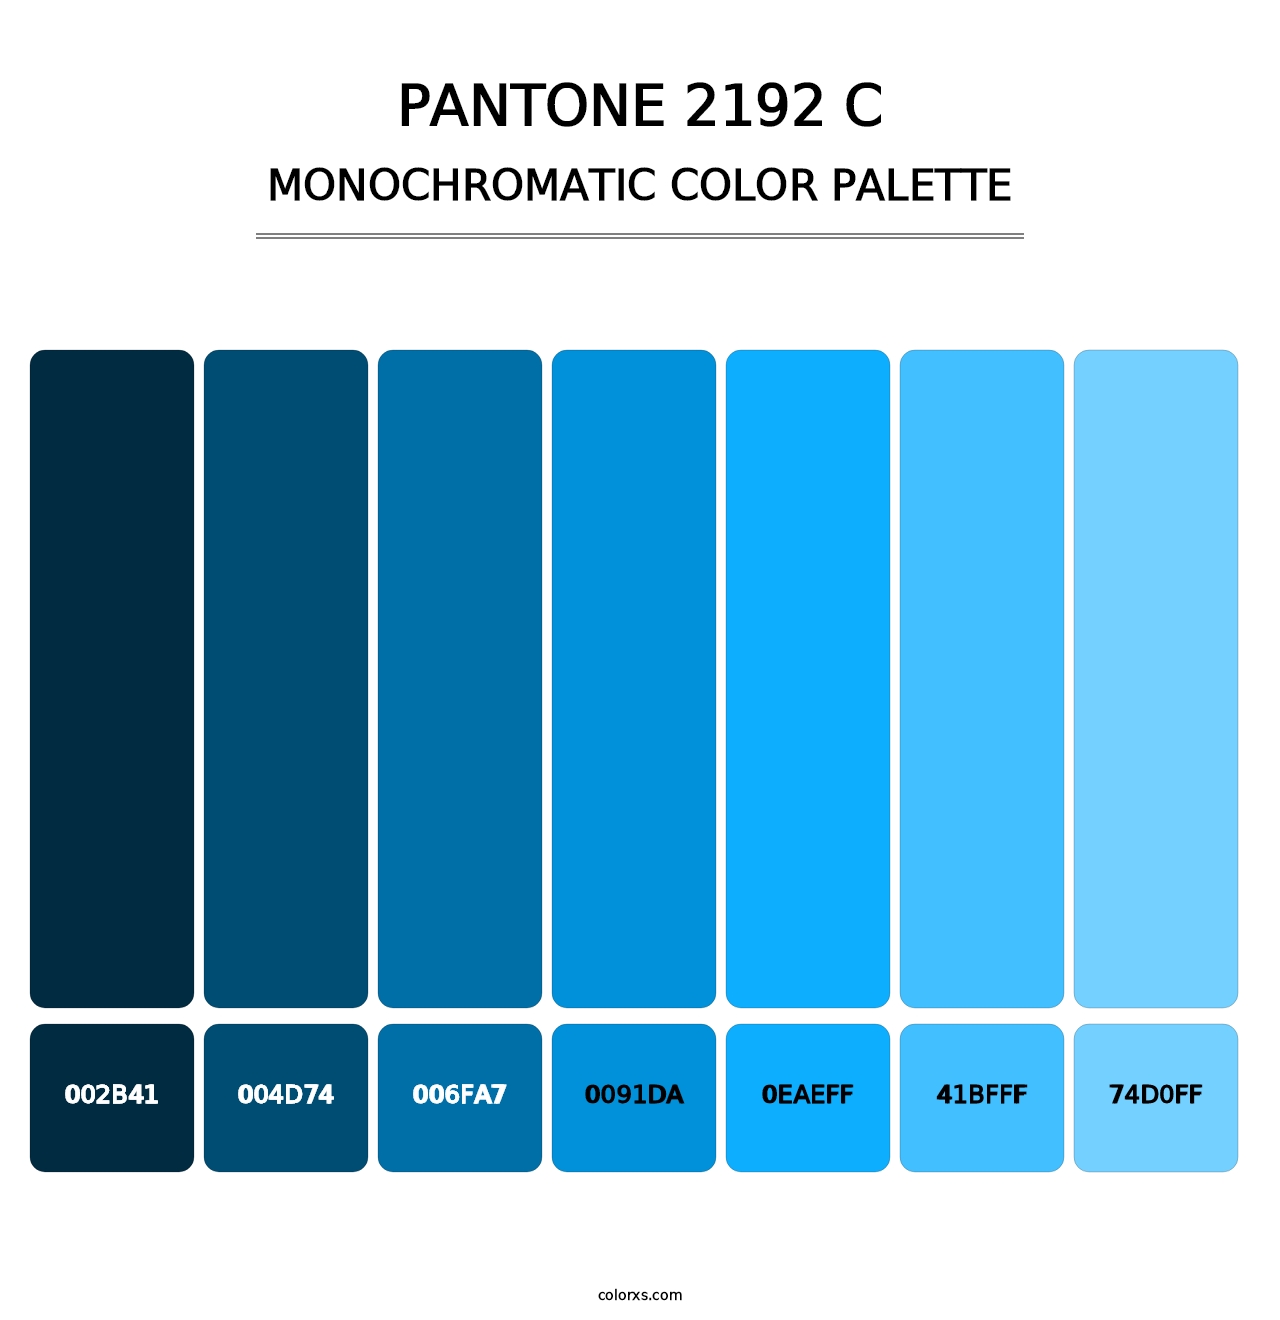 PANTONE 2192 C - Monochromatic Color Palette